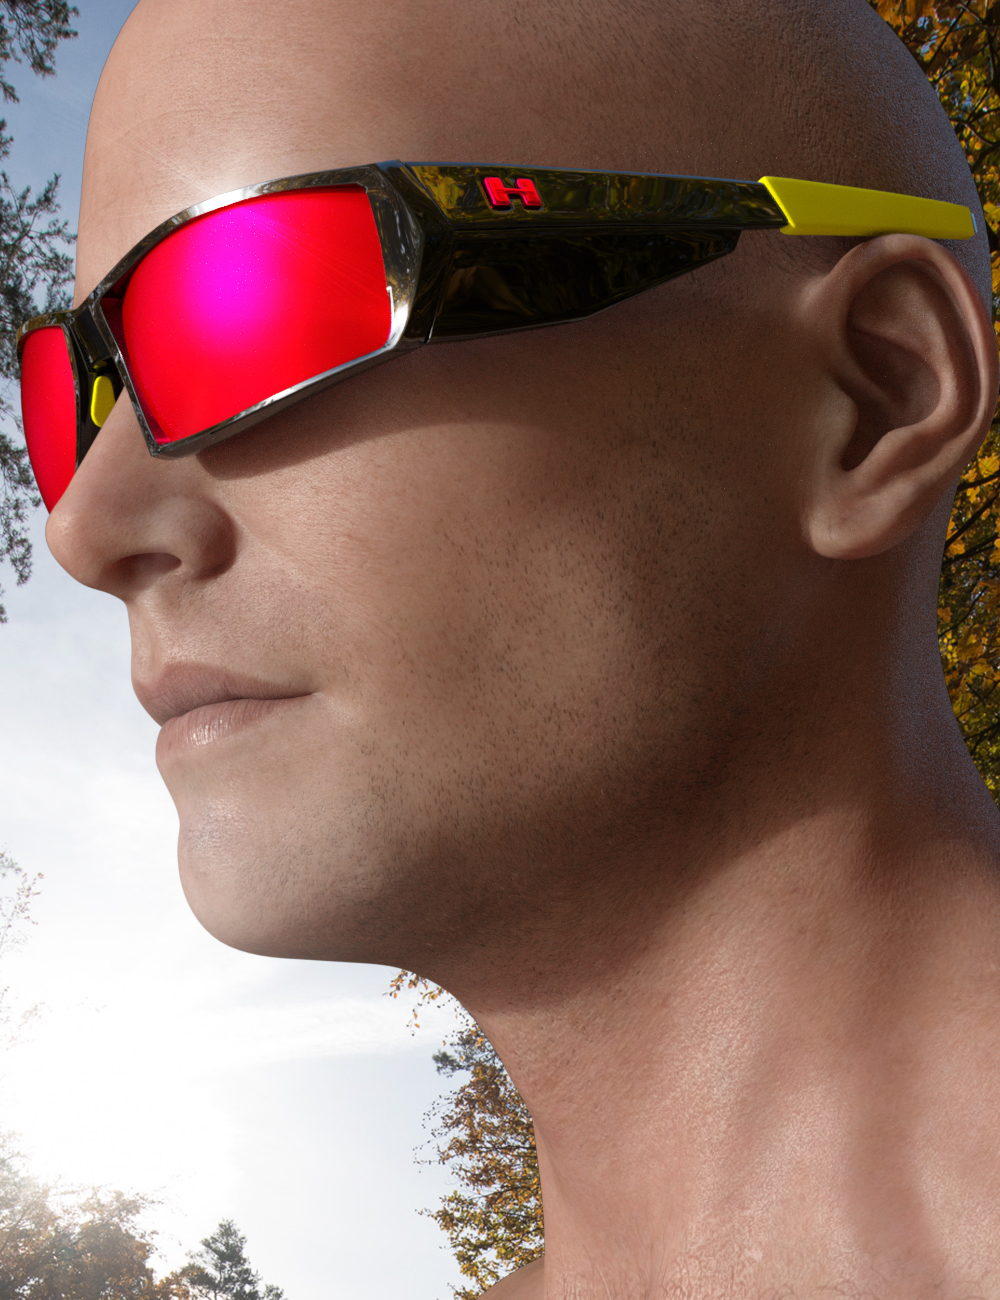 Eyewear Pack 1.0 - Adventure by: Torinouta, 3D Models by Daz 3D